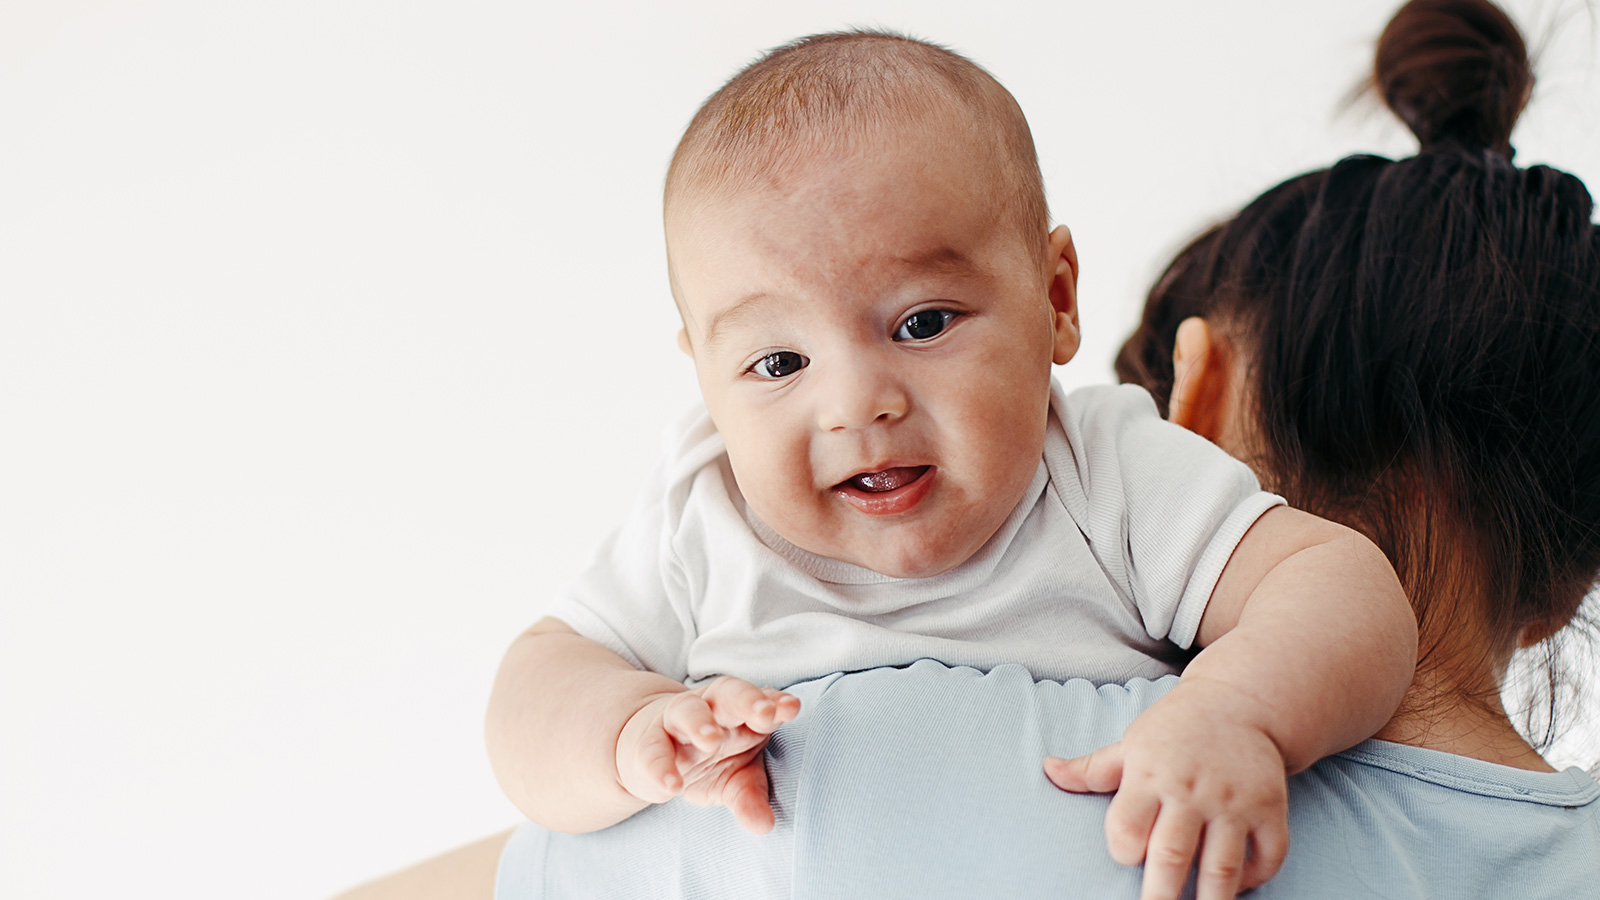 ‪الخبراء ينصحون بالتربيت على ظهر الطفل الرضيع أو تدليكه بلطف لإخراج الغازات قبل الوجبة وبعدها‬ (غيتي)